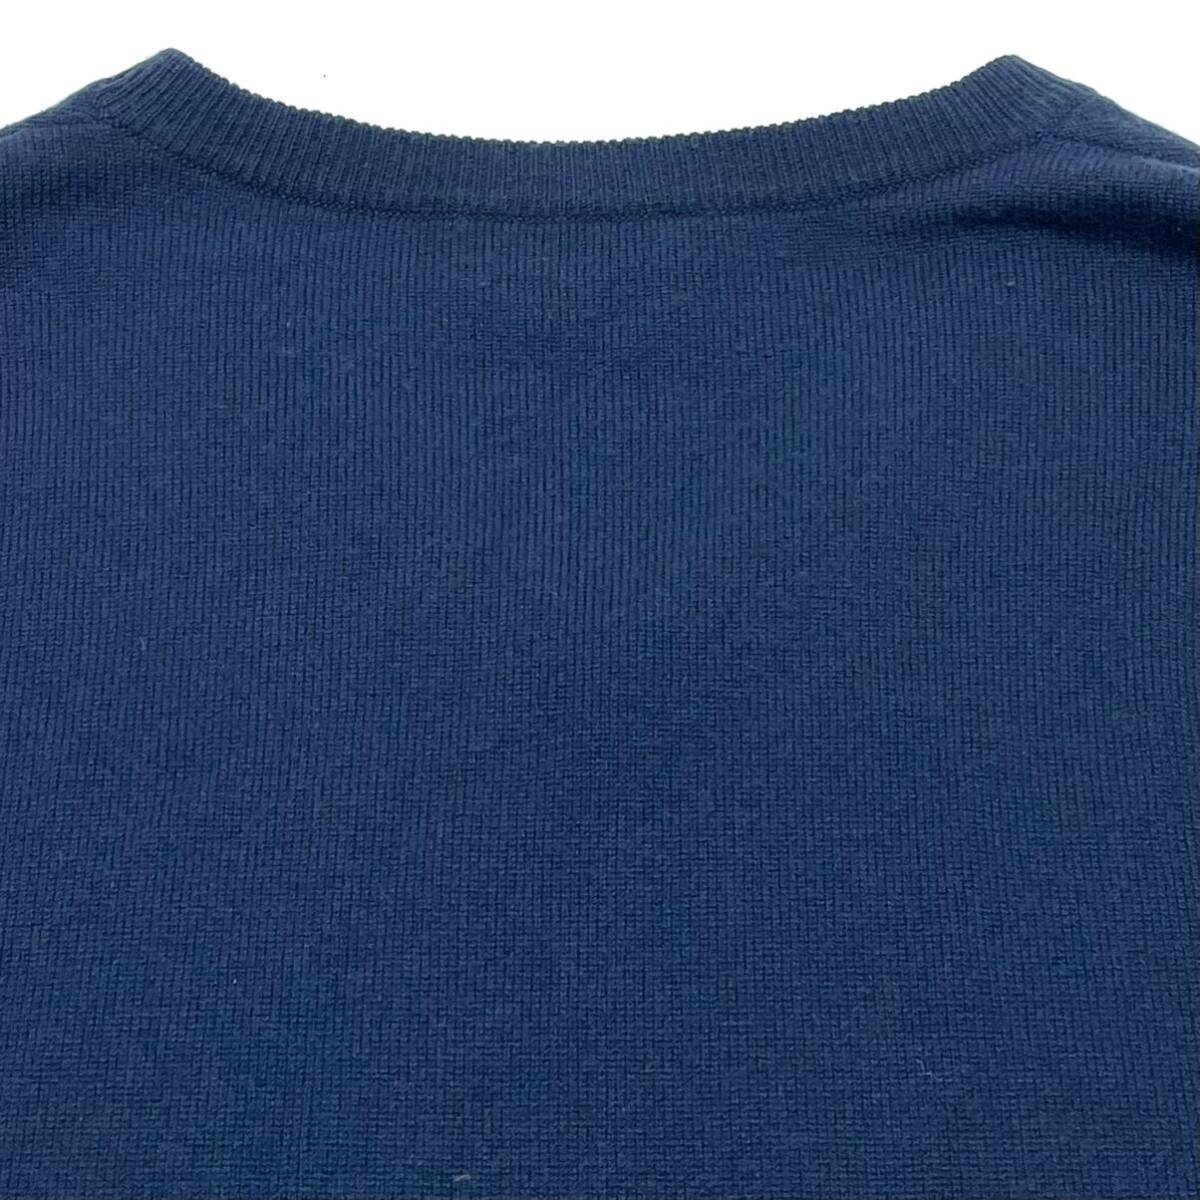 正規品 HERMES エルメス カシミヤ100% ニット Vネック セーター 長袖 トップス cashmere knit sweater ネイビー L イタリア製 メンズ_画像5